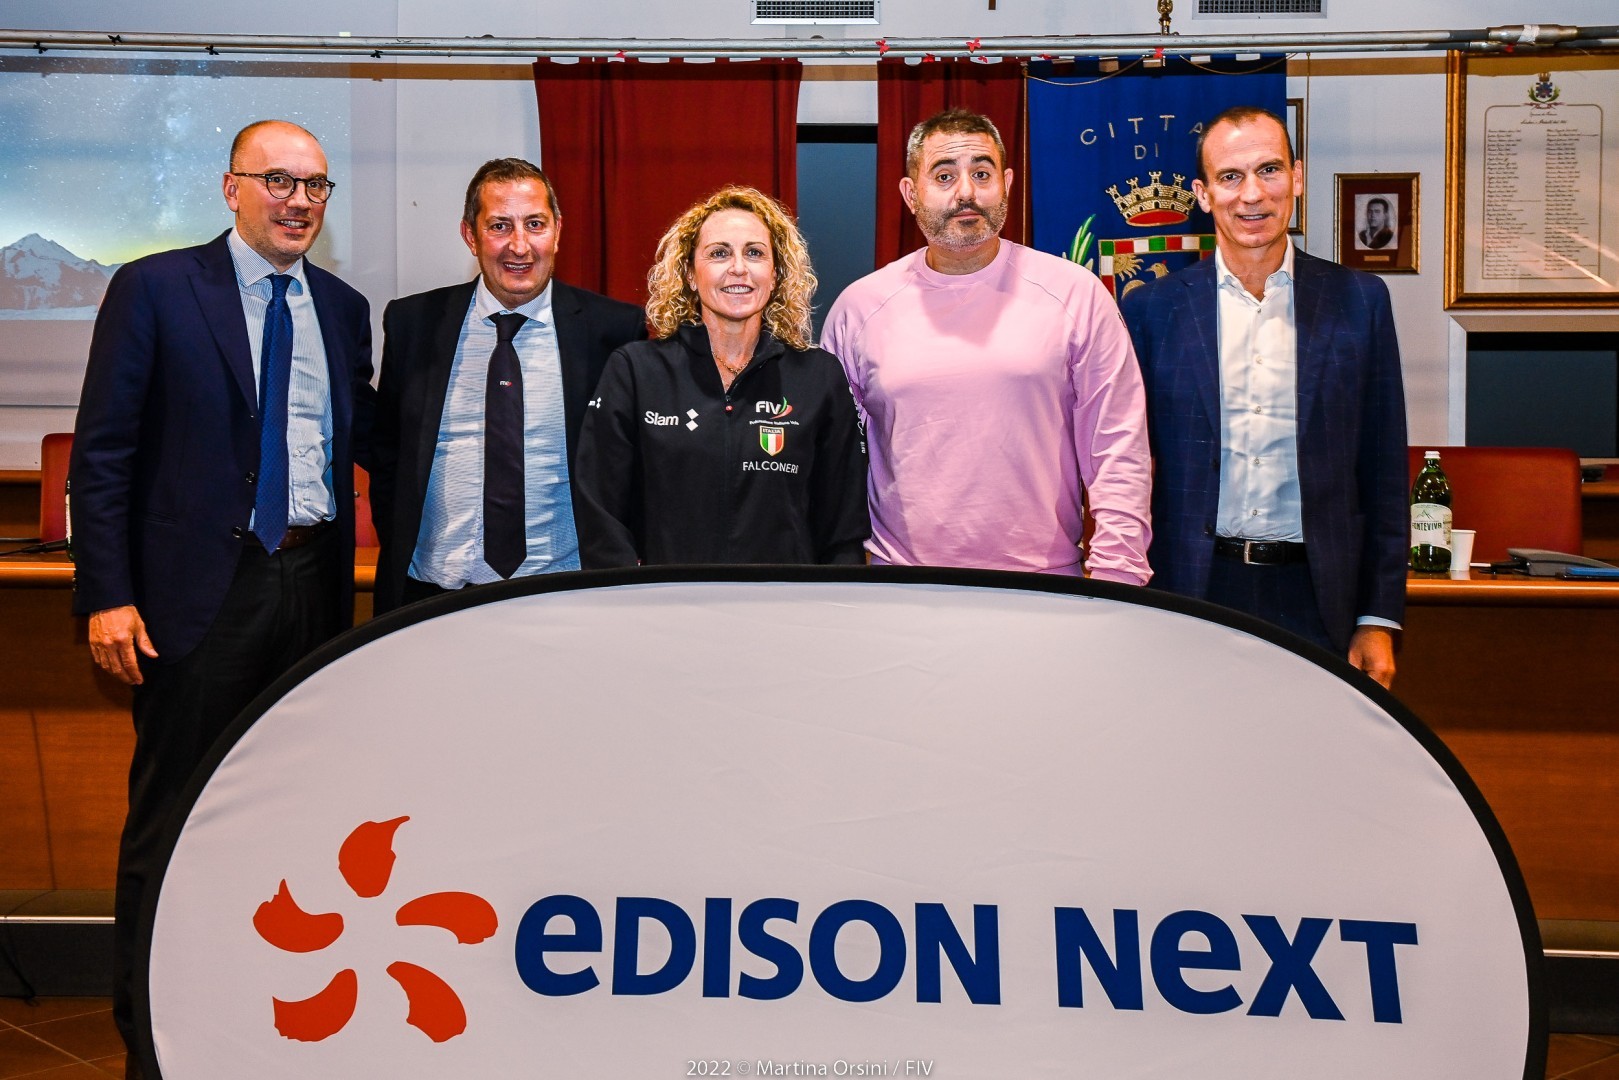 Edison Next main-partner della Federazione Italiana Vela e title sponsor del CICO Edison Next a Formia